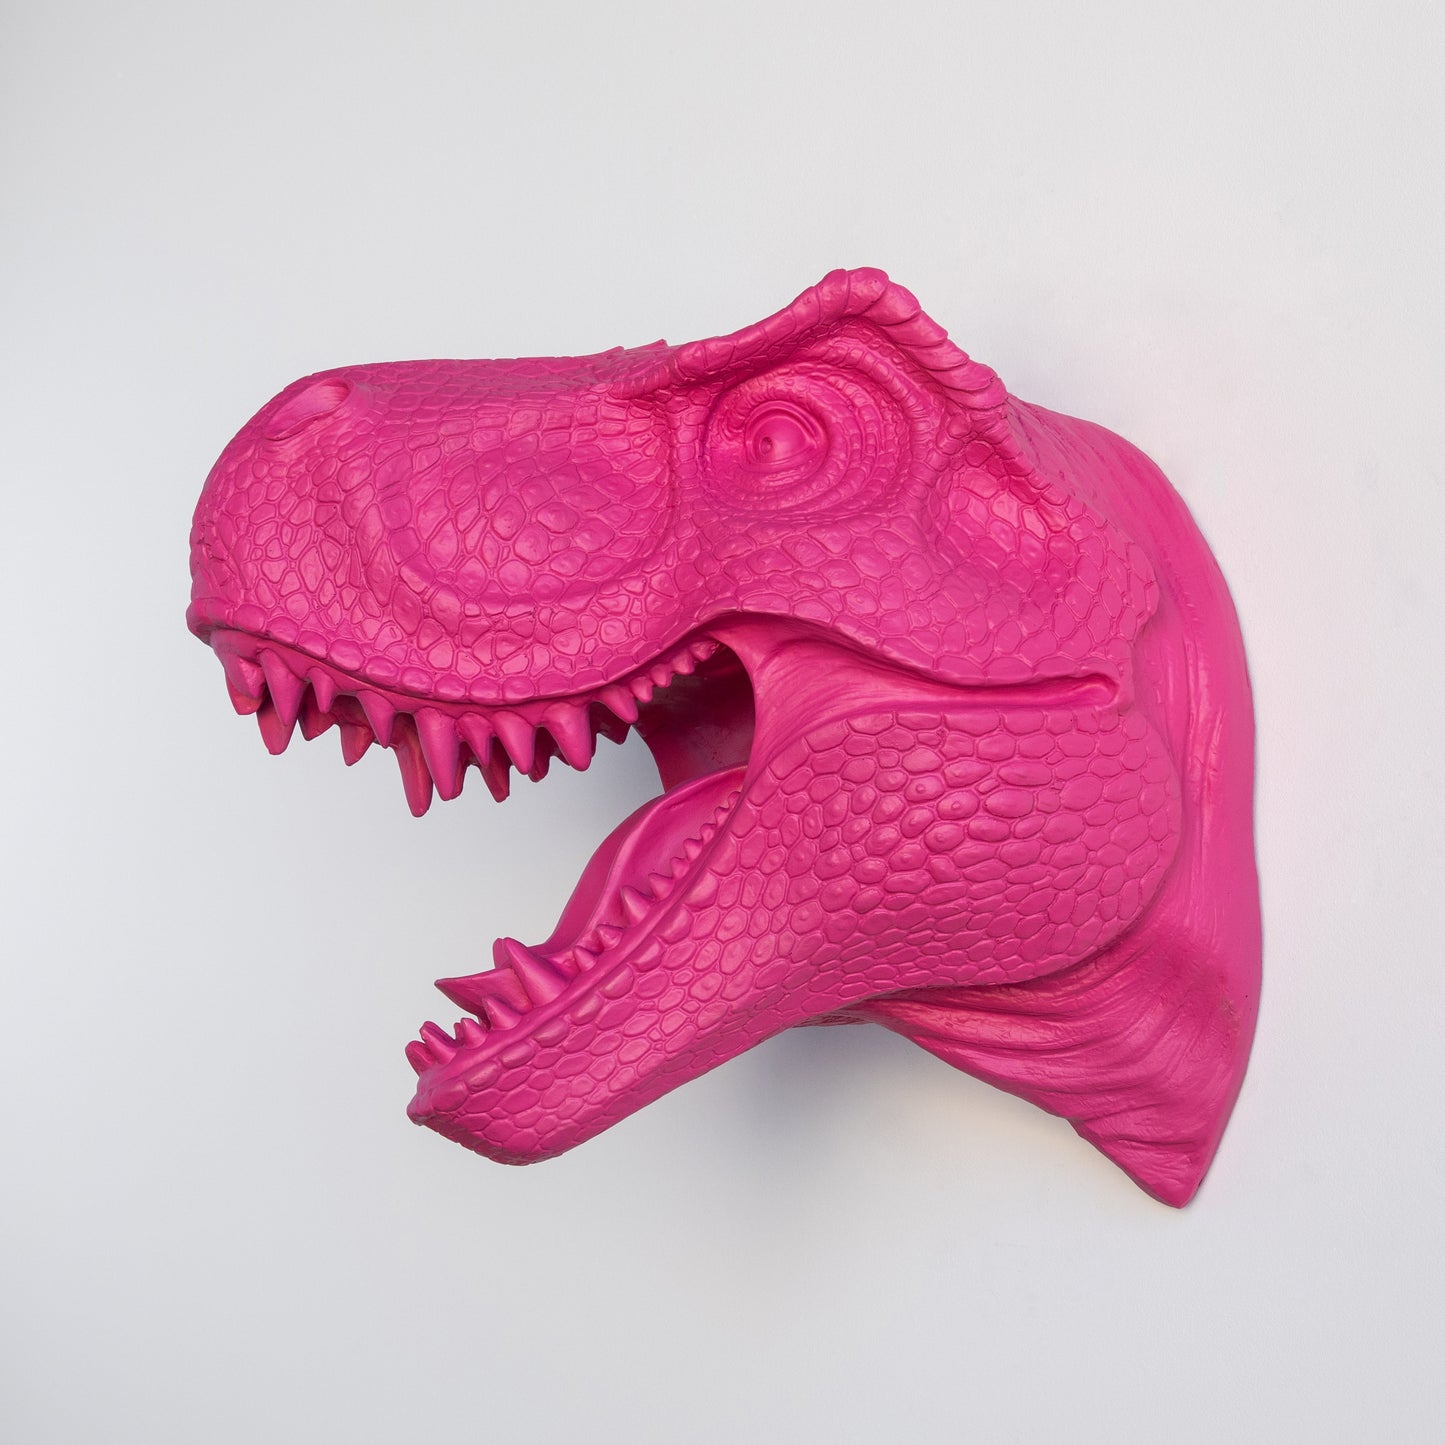 T-Rex Dinosaur Head Wall Mount // Hot Pink